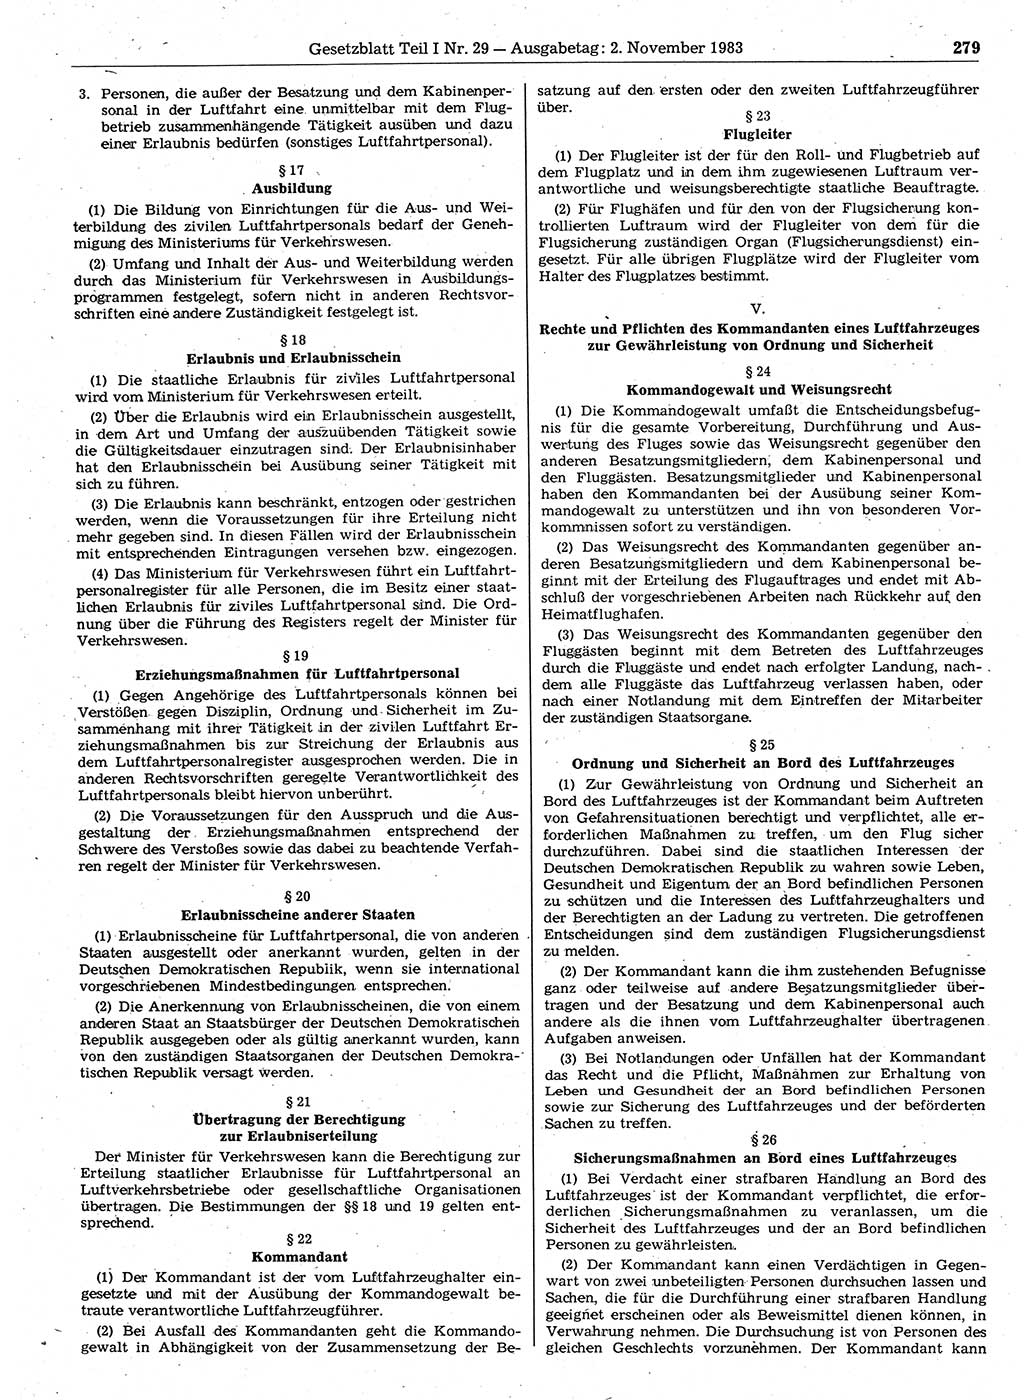 Gesetzblatt (GBl.) der Deutschen Demokratischen Republik (DDR) Teil Ⅰ 1983, Seite 279 (GBl. DDR Ⅰ 1983, S. 279)